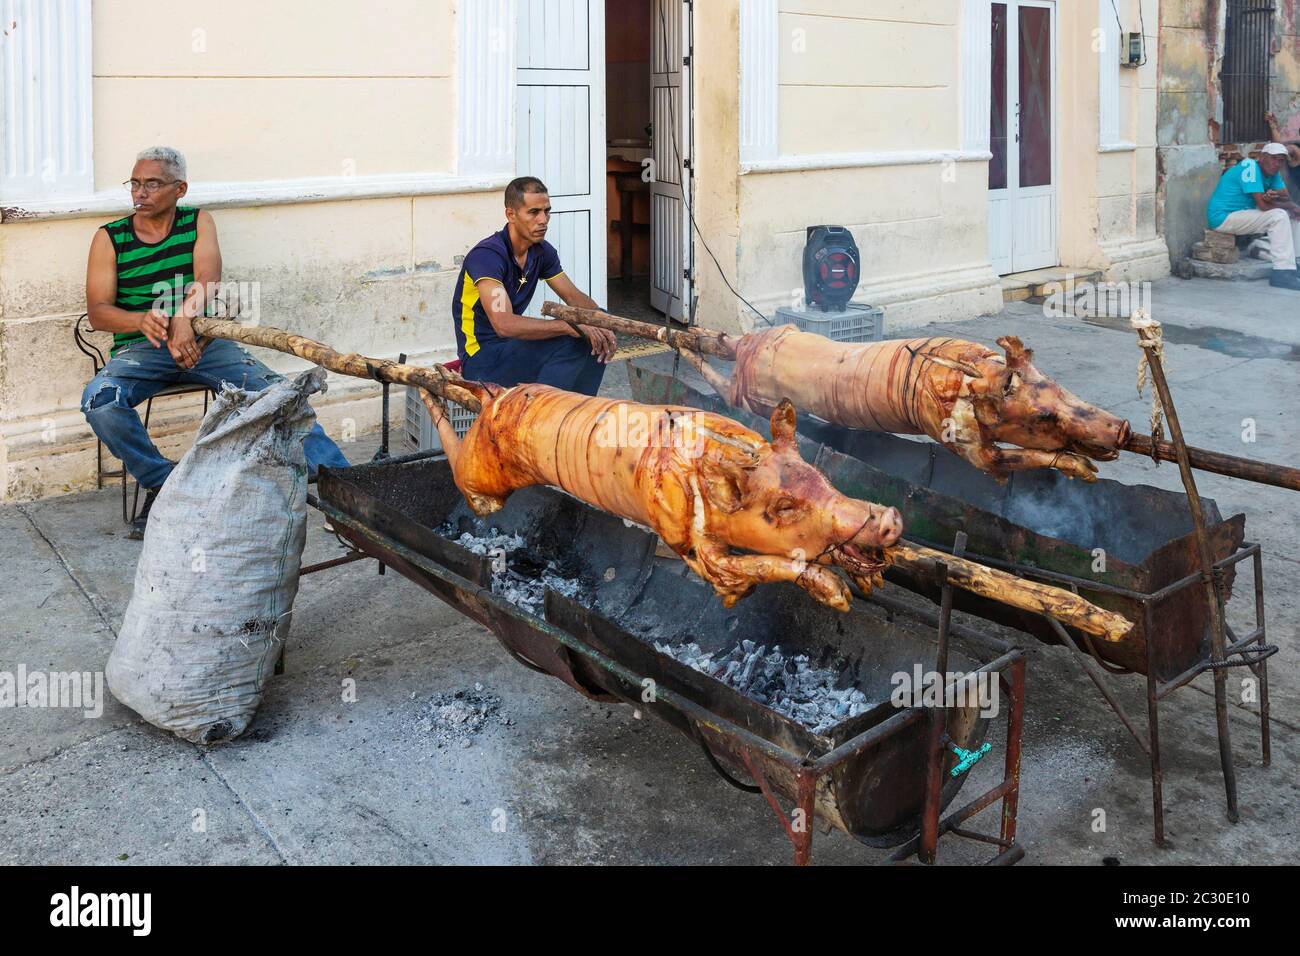 Rôtir des porcs dans une zone piétonne du centre-ville afin de vendre ultérieurement des portions de viande au public, Manzanillo, Cuba Banque D'Images